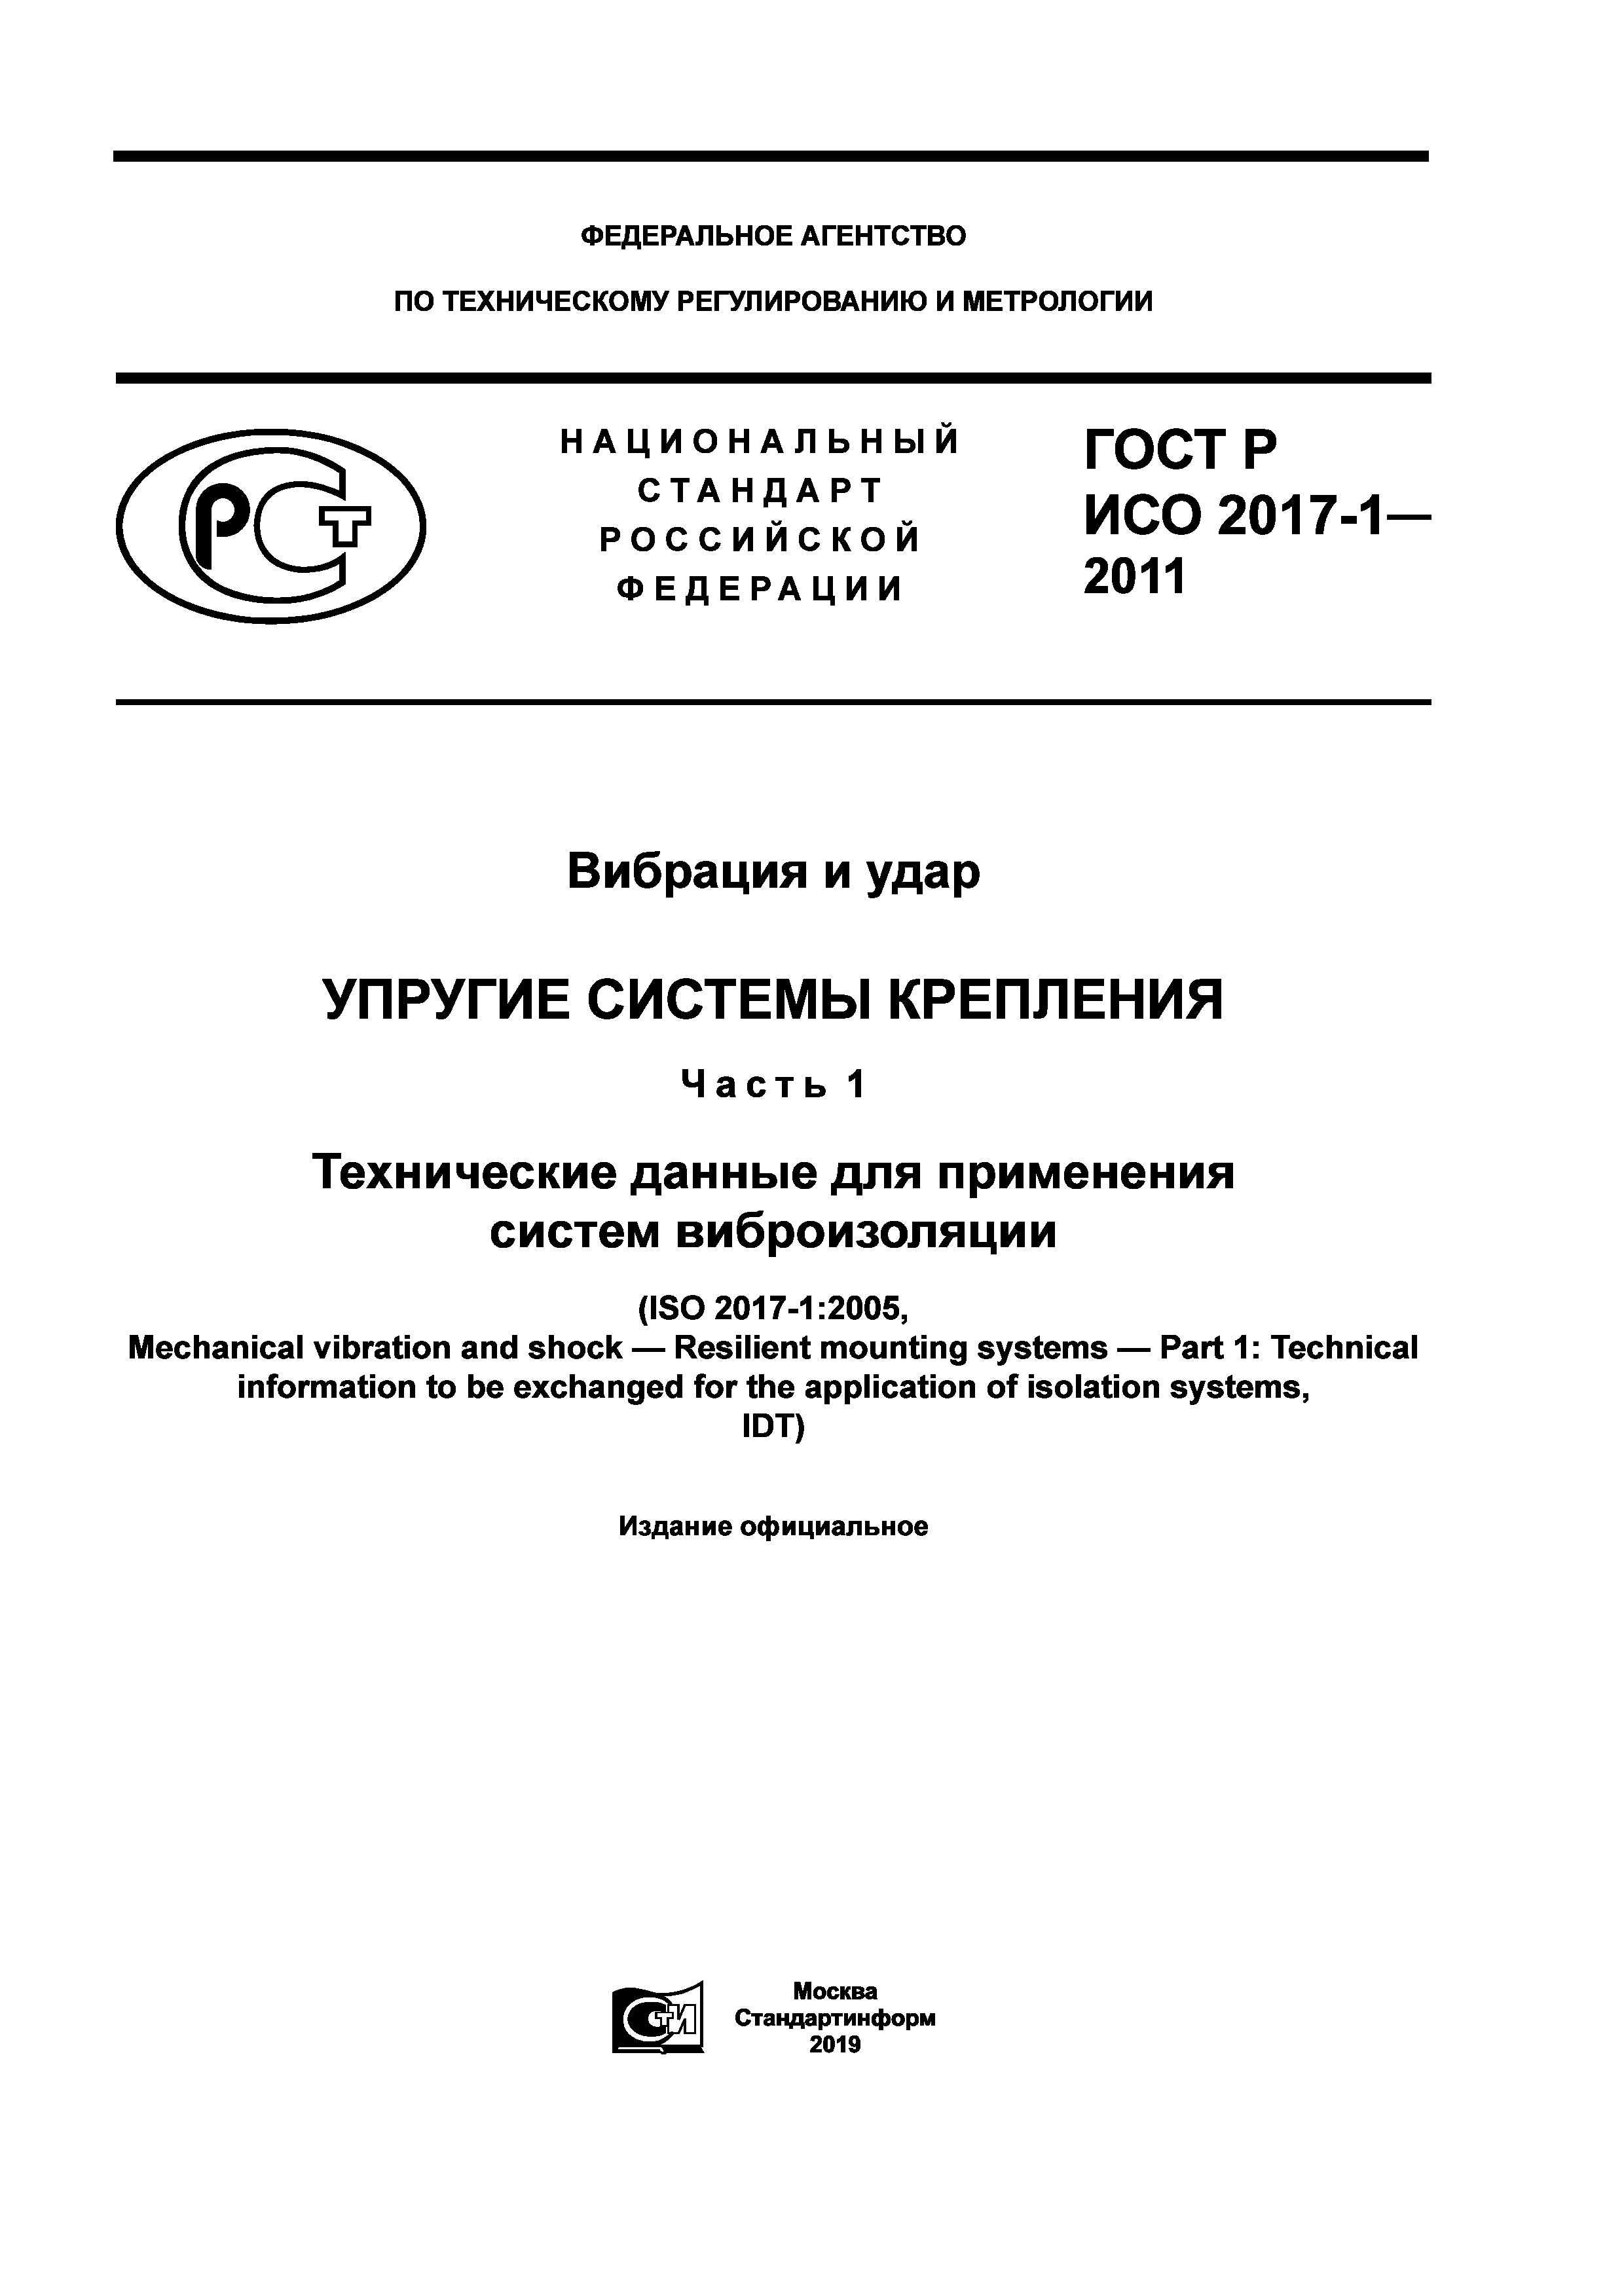 ГОСТ Р ИСО 2017-1-2011